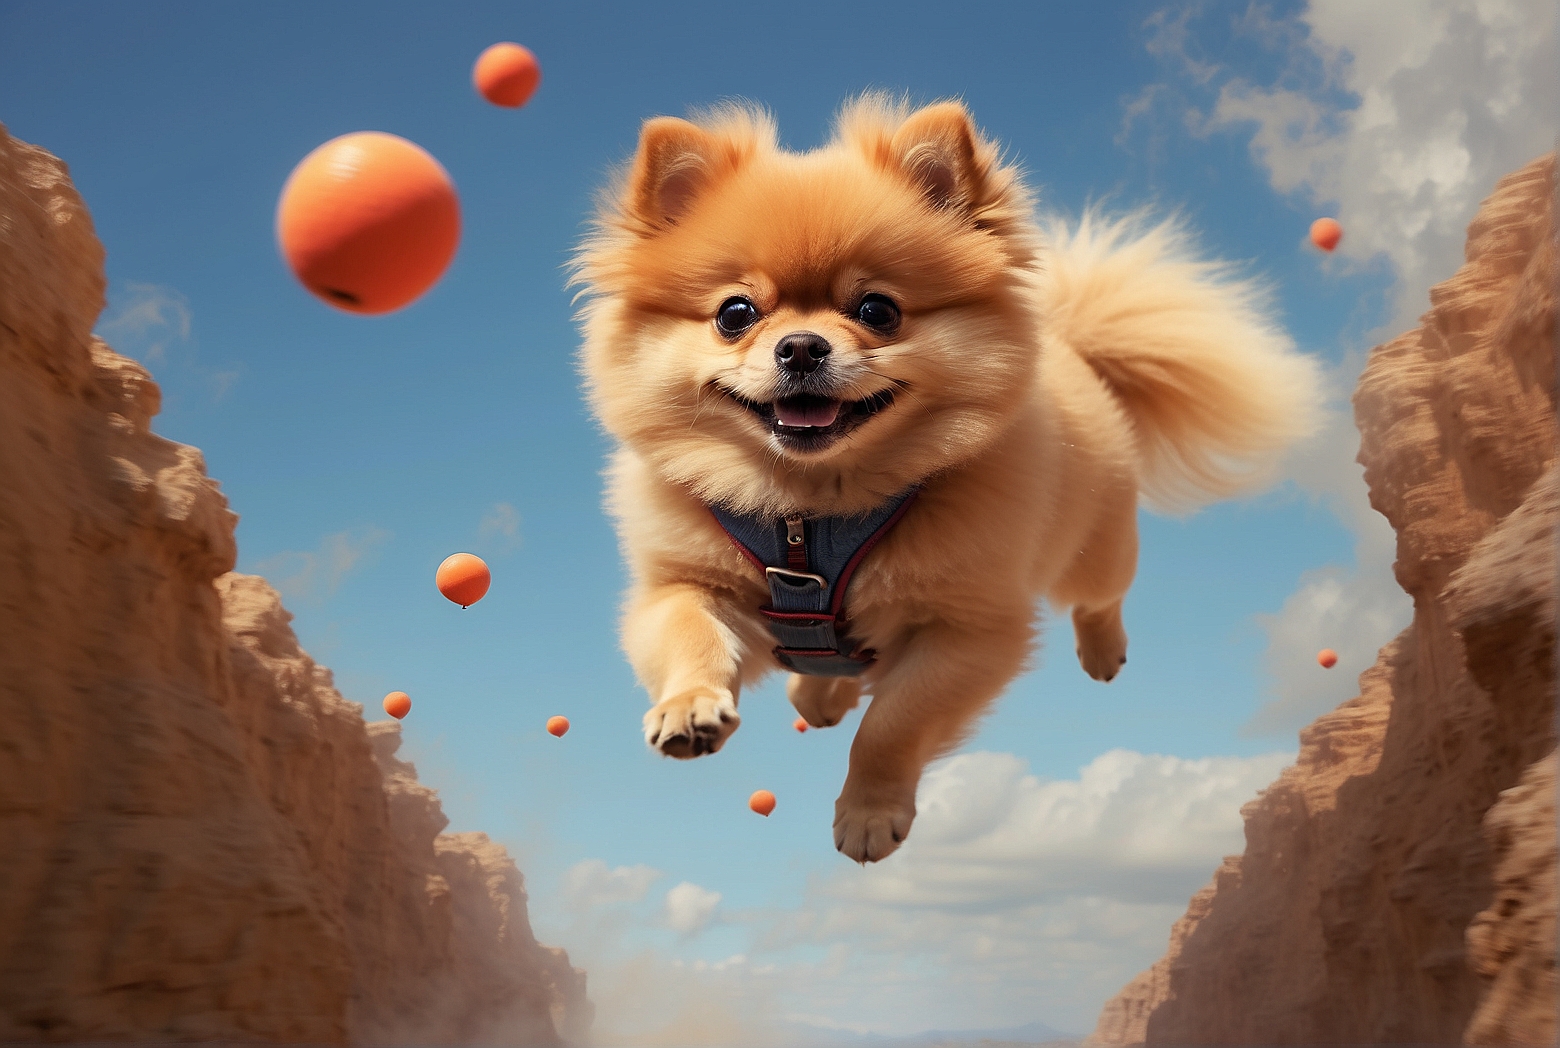 Can Pomeranians Jump High?